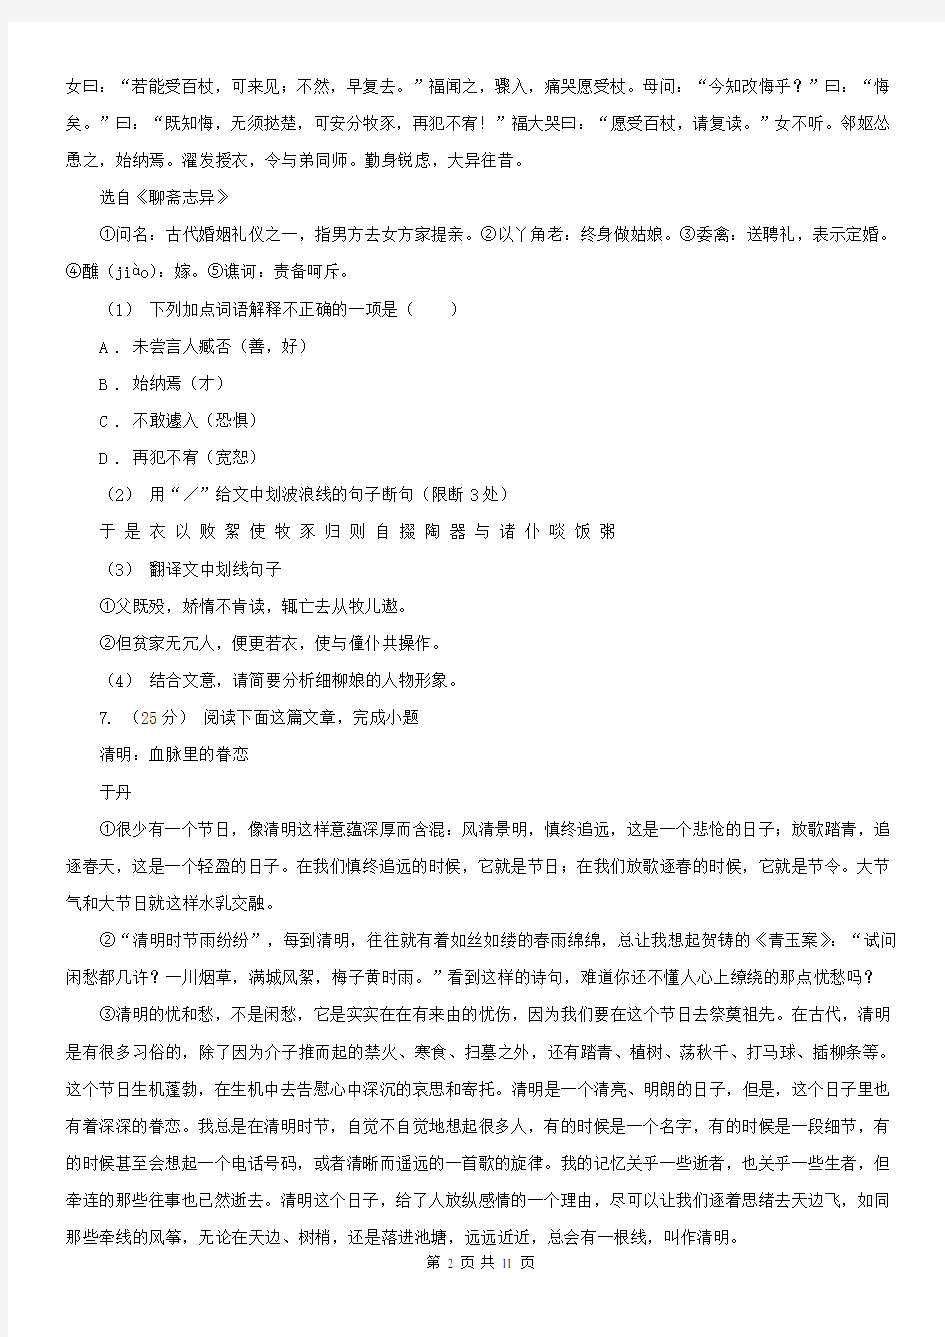 湖北省2020版中考语文试卷(I)卷(新版)